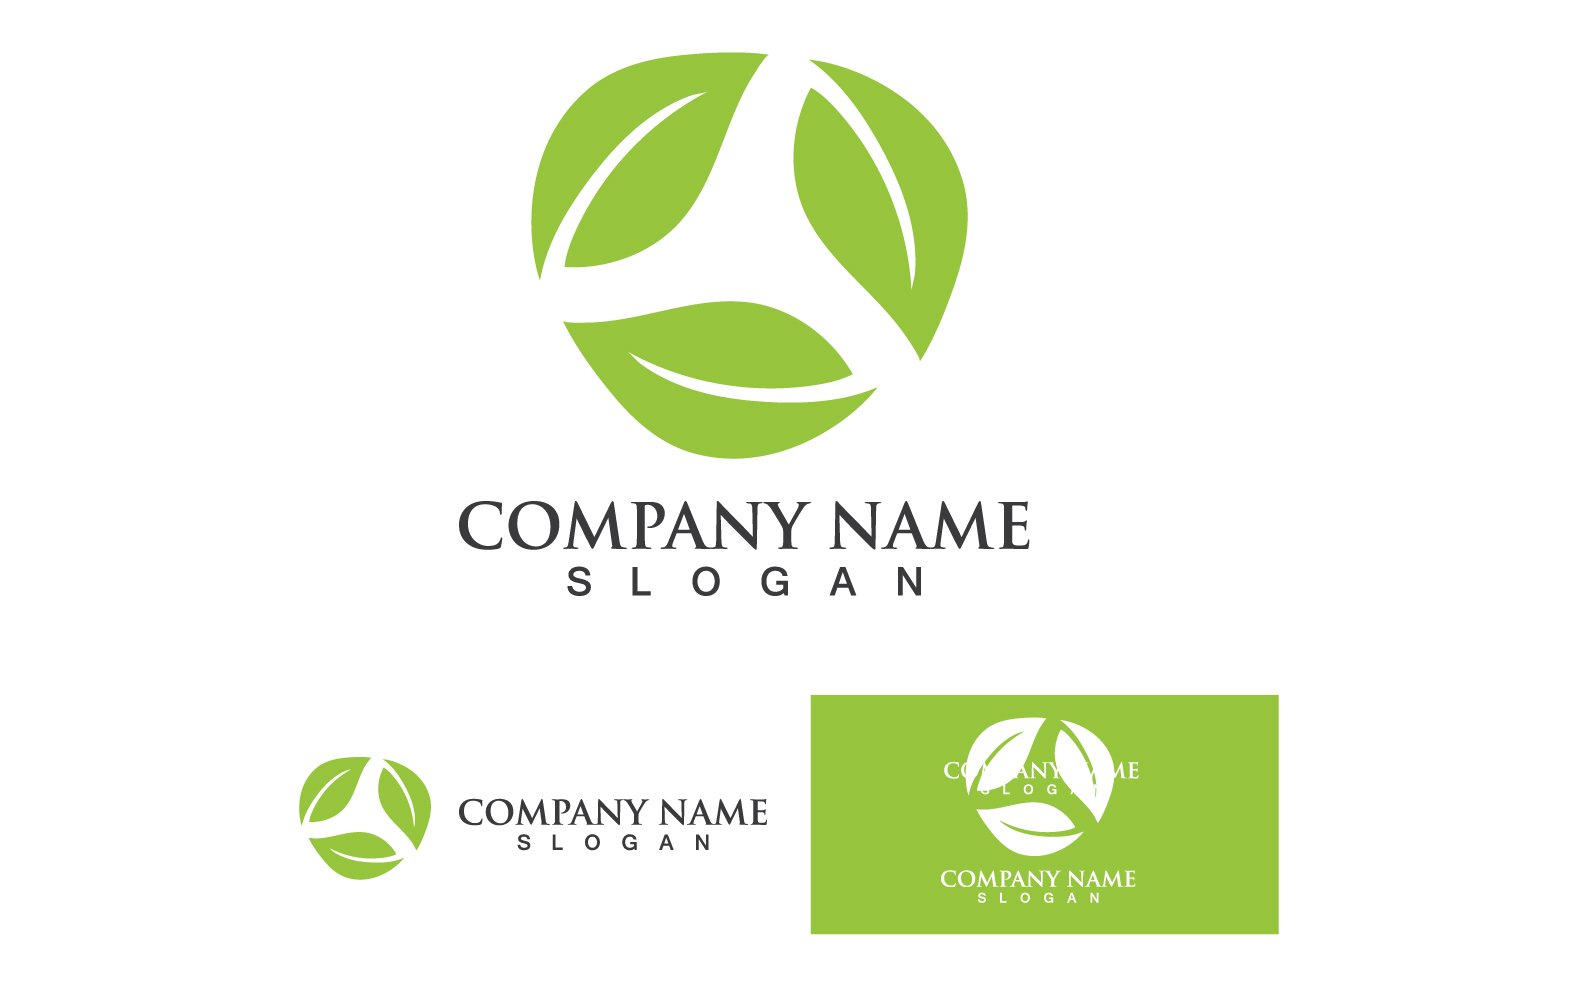 Kit Graphique #333995 Tree Leaf Divers Modles Web - Logo template Preview